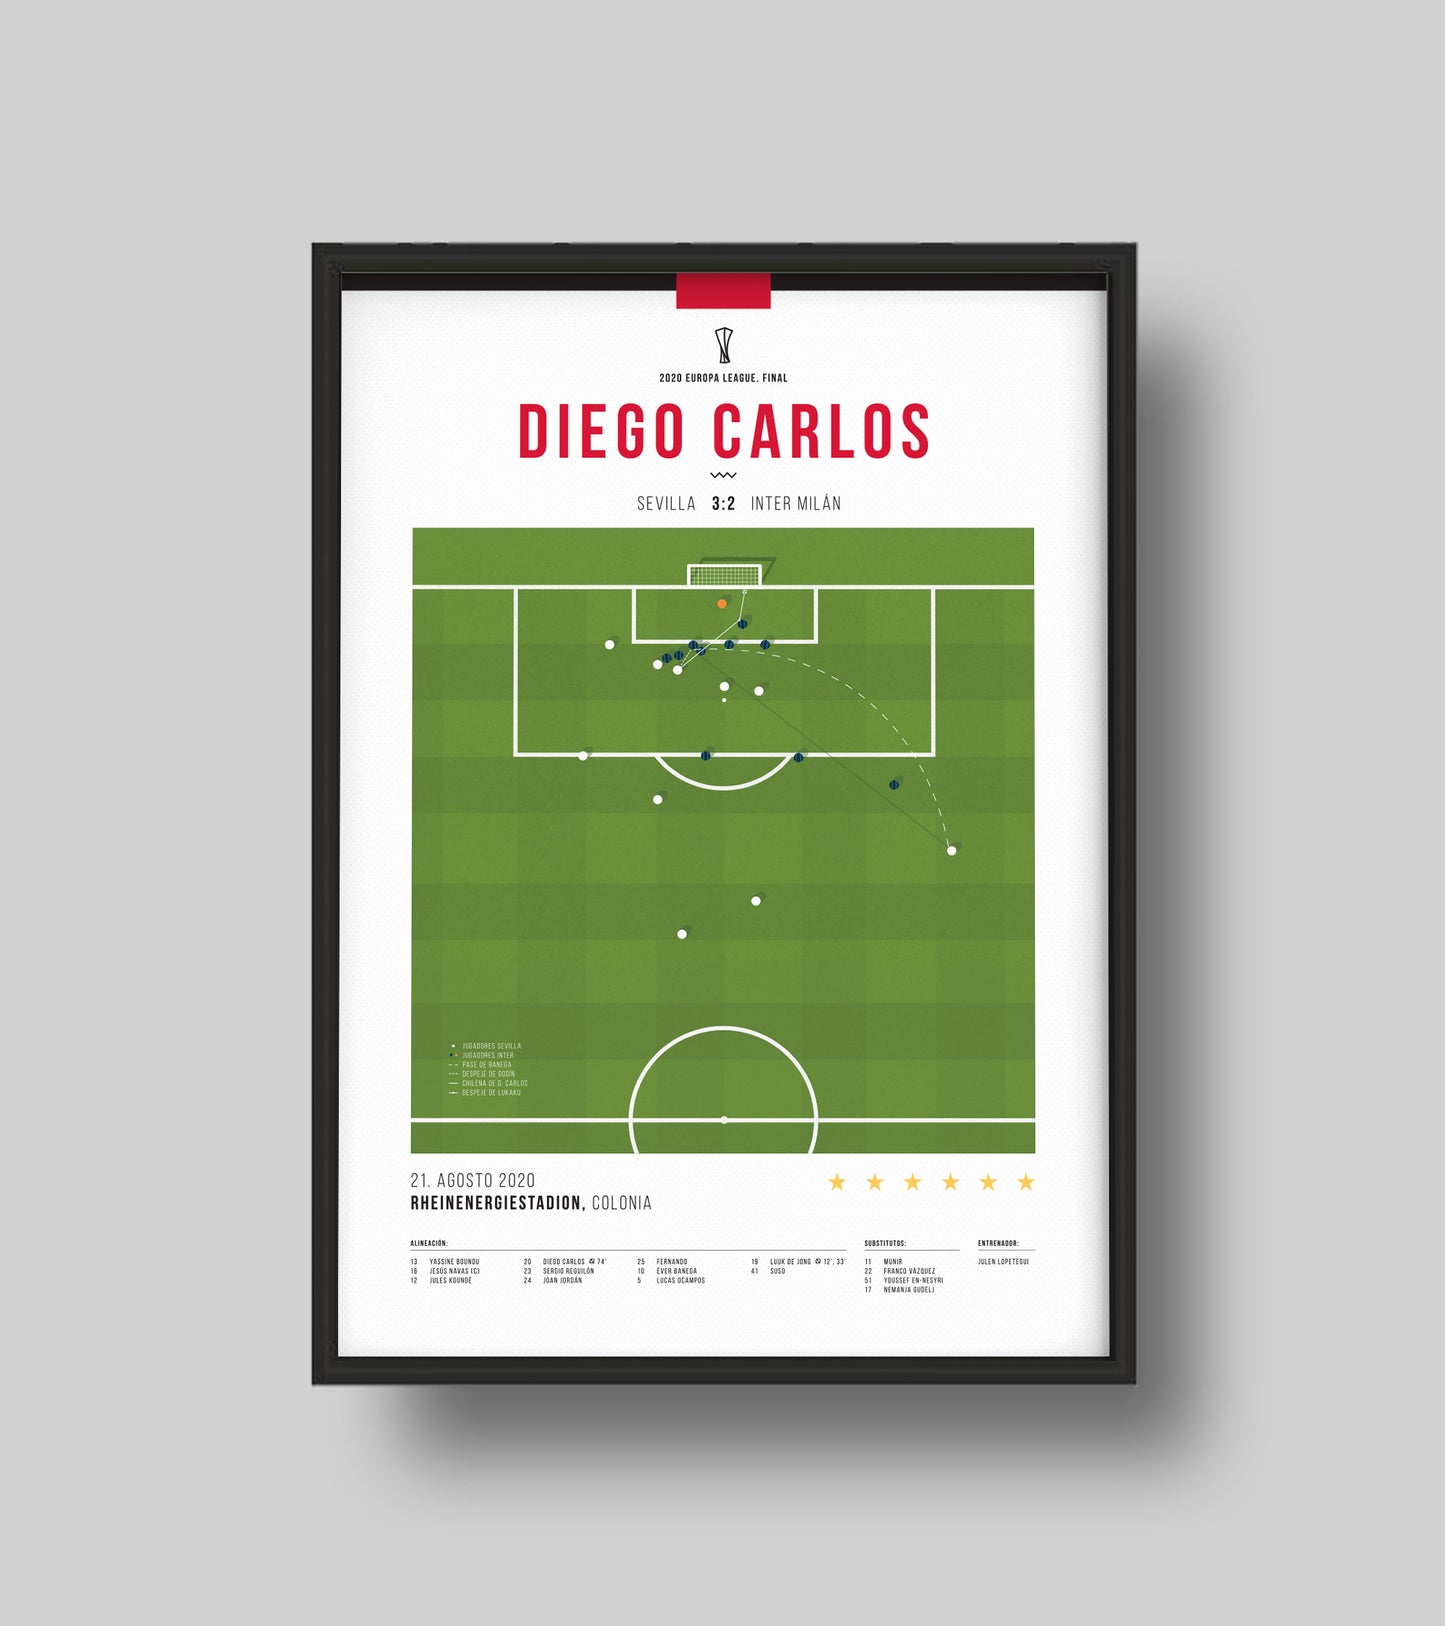 Diego Carlos Overhead Kick contre l'Inter Milan